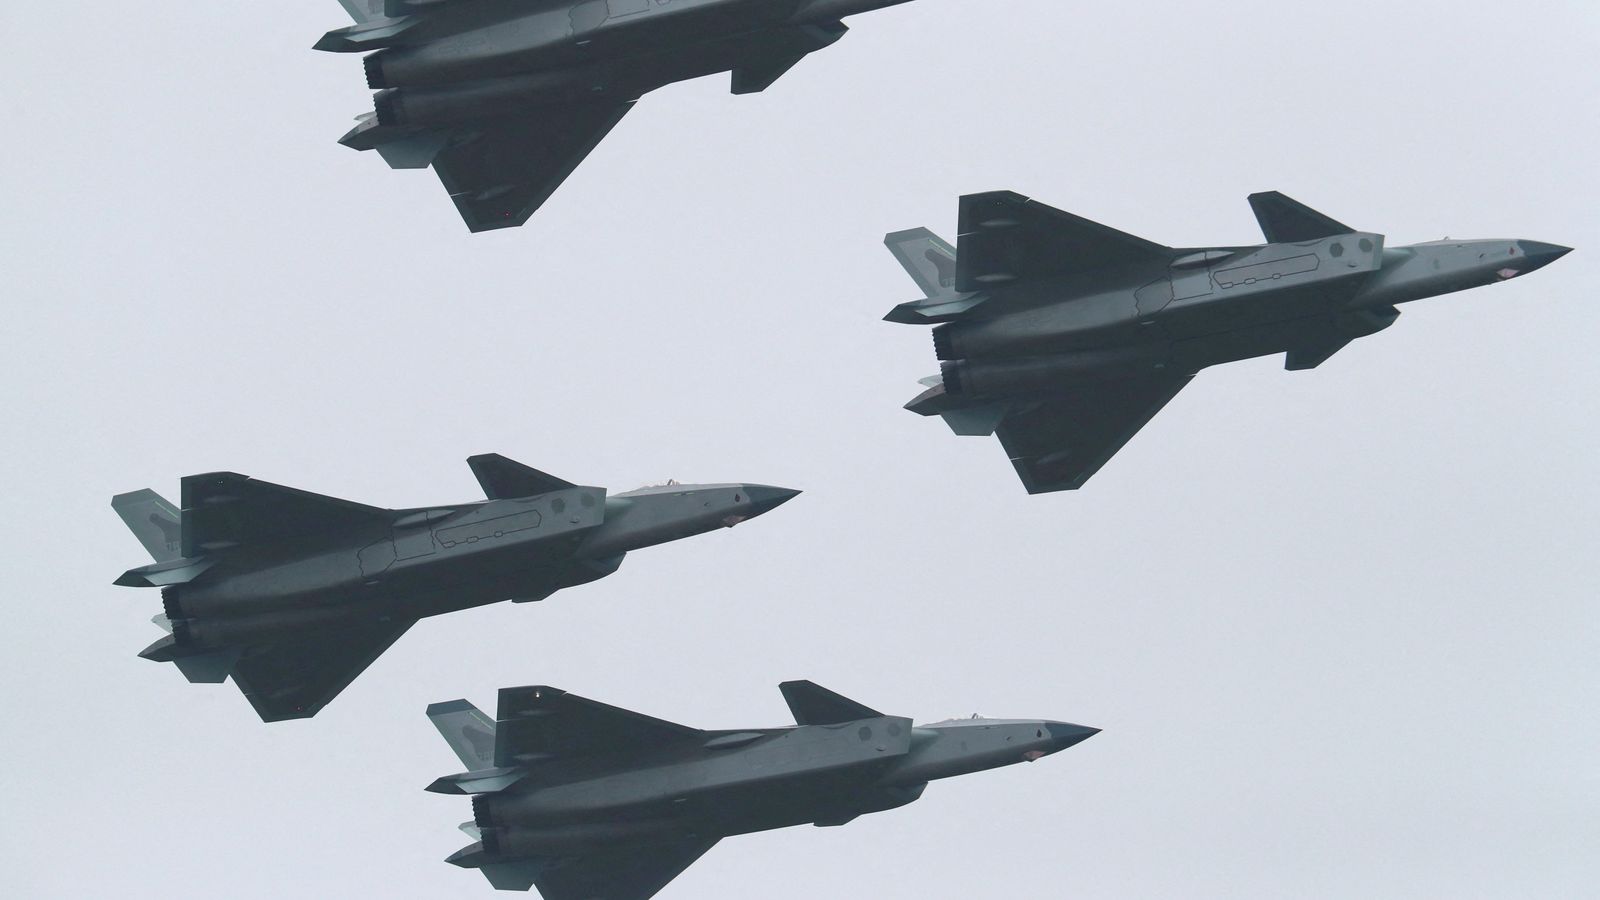 La Chine montre des jets autrefois enveloppés de secret dans une démonstration claire de puissance militaire |  Nouvelles du monde